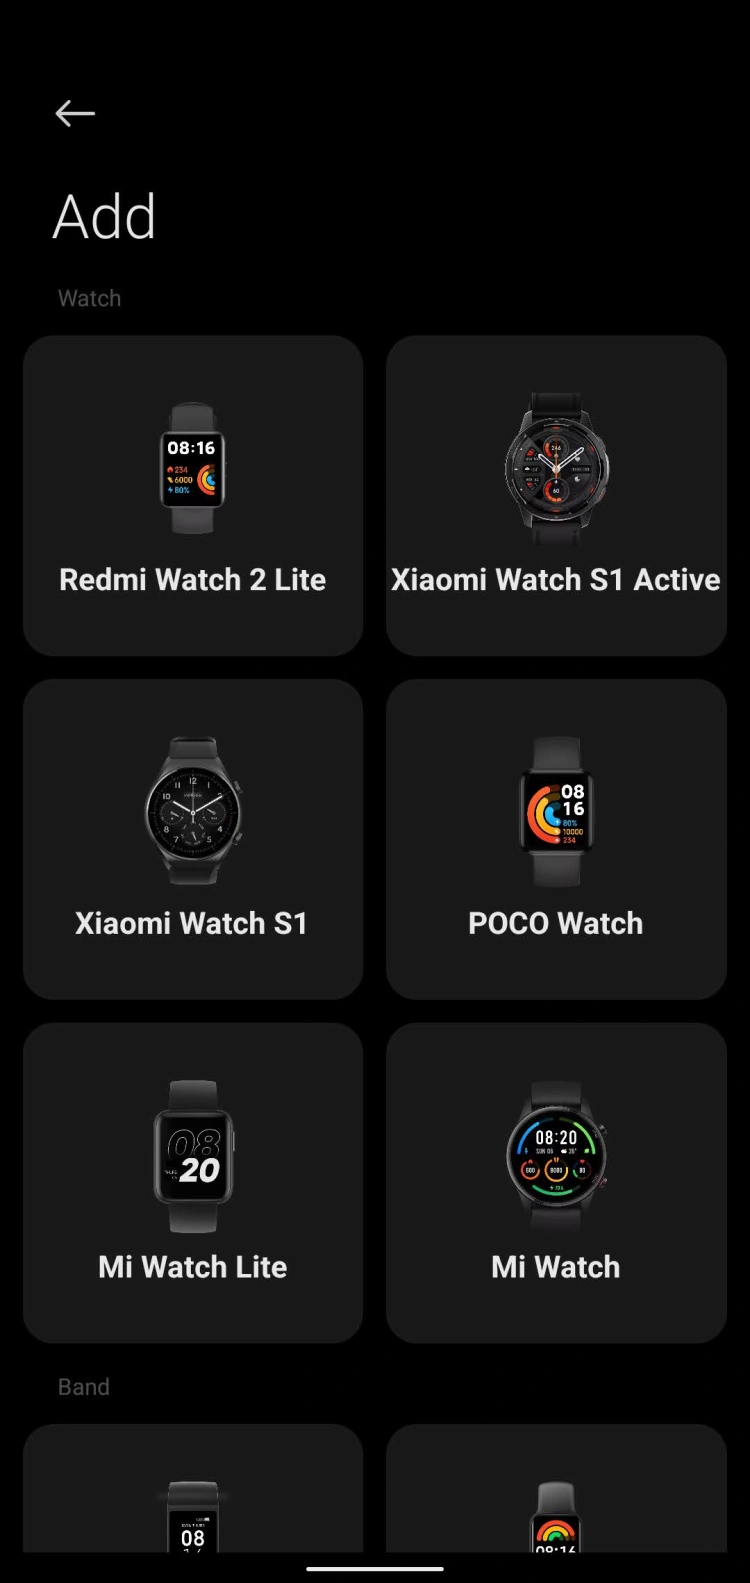 Xiaomi Watch S1 - dużo formy, a gdzie treść? [RECENZJA]